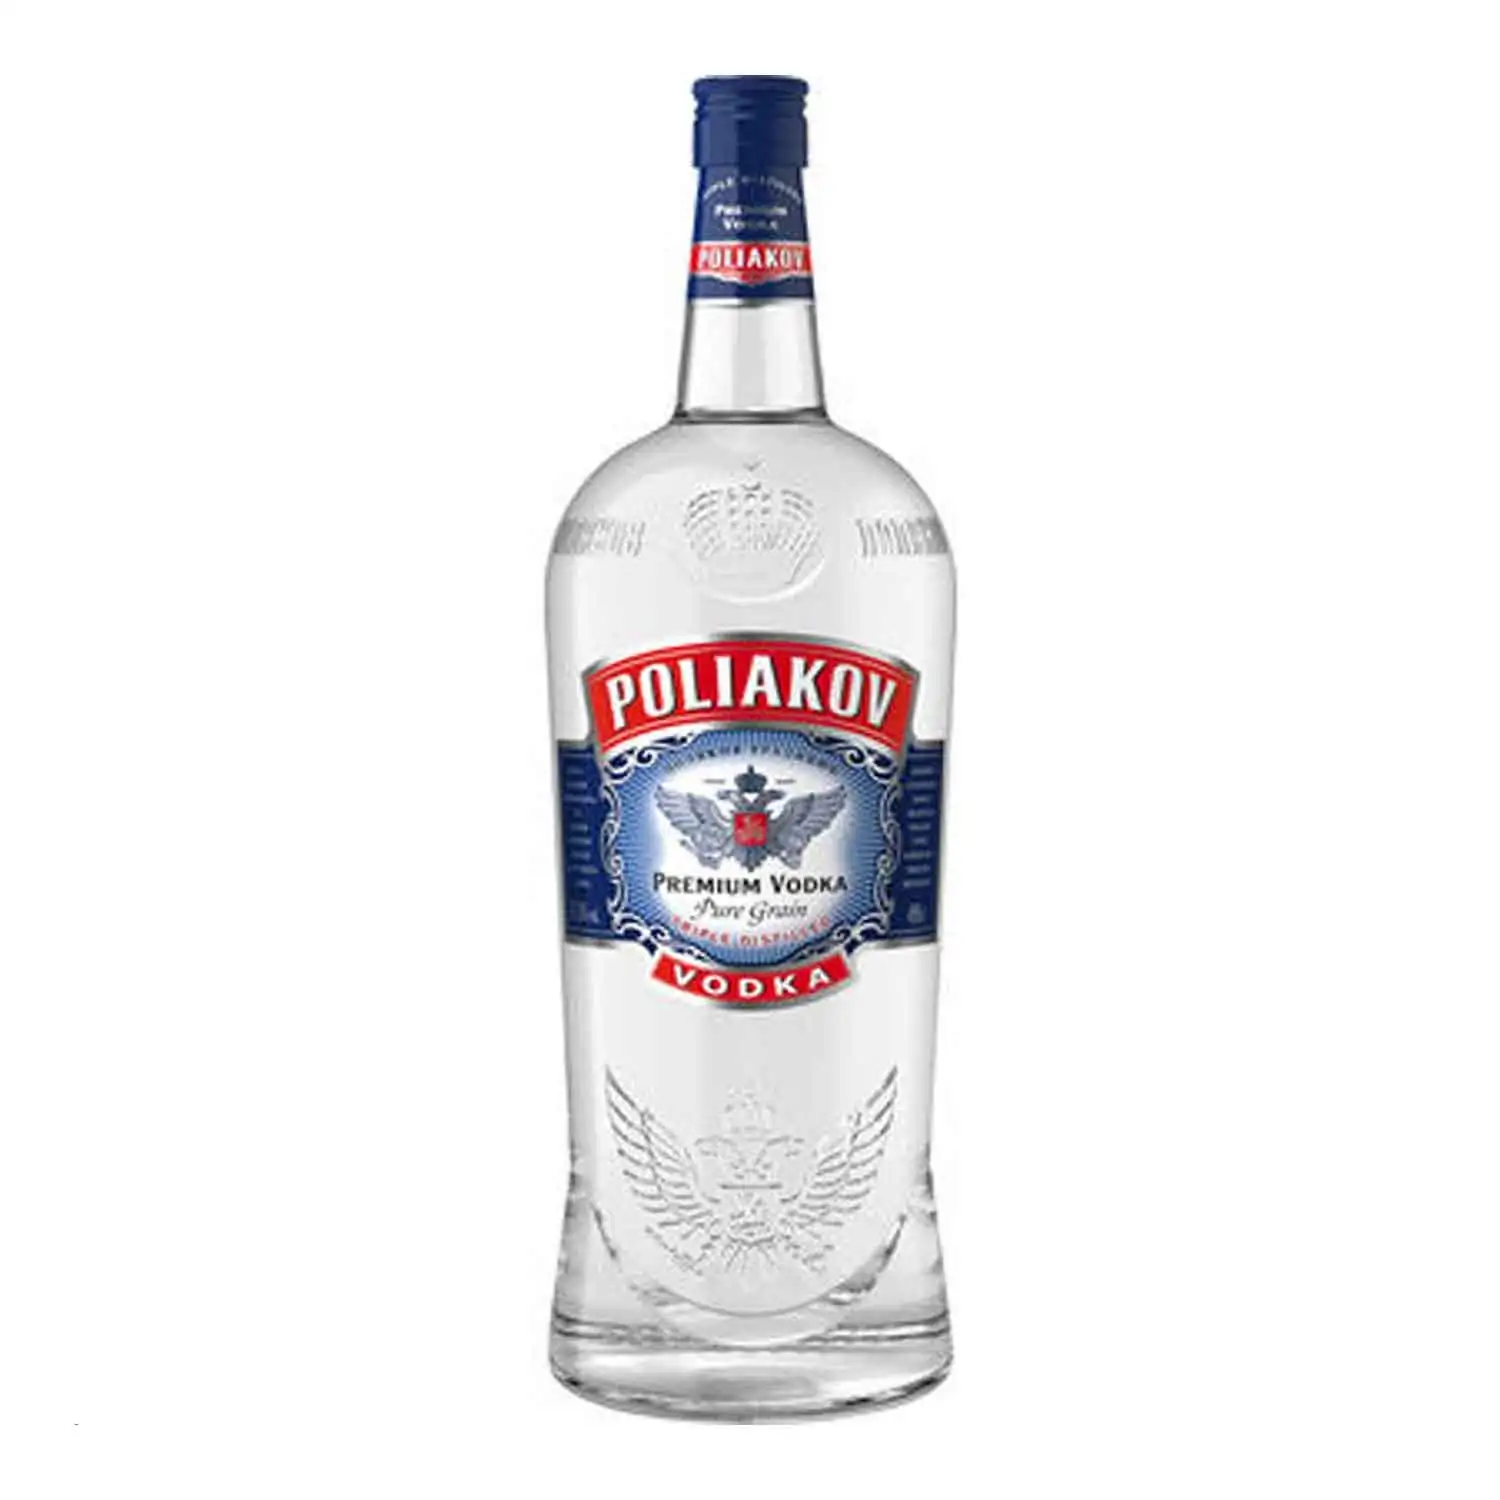 Poliakov vodka 4,5l Alc 37,5% - Buy at Real Tobacco